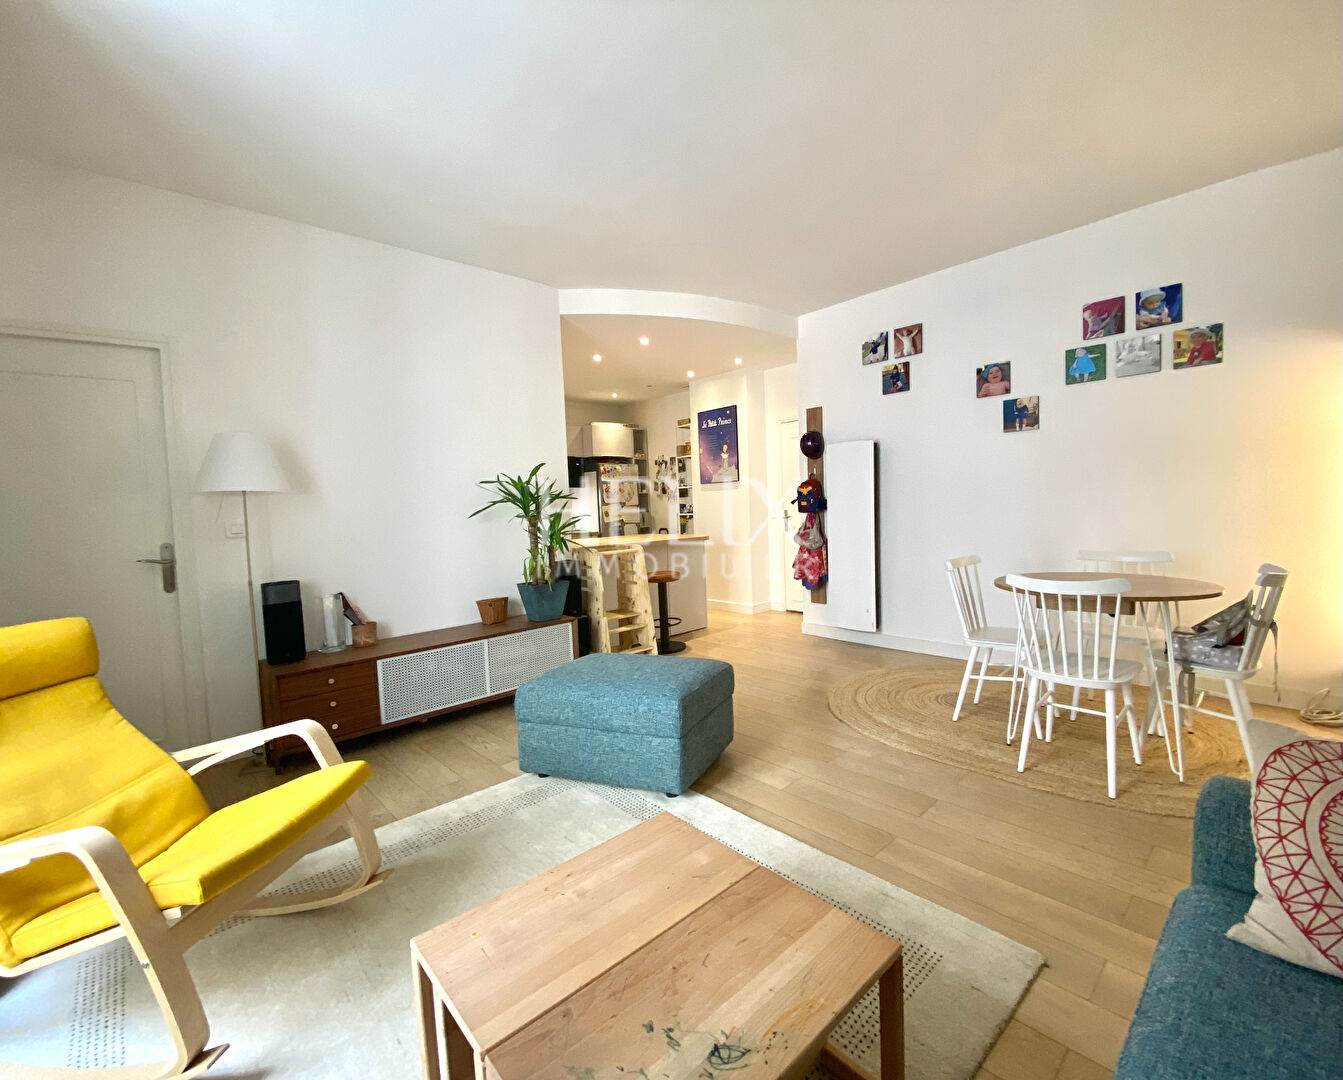 Magnifique appartement avec 2 chambres dans le centre ville de Saint Germain en Laye.